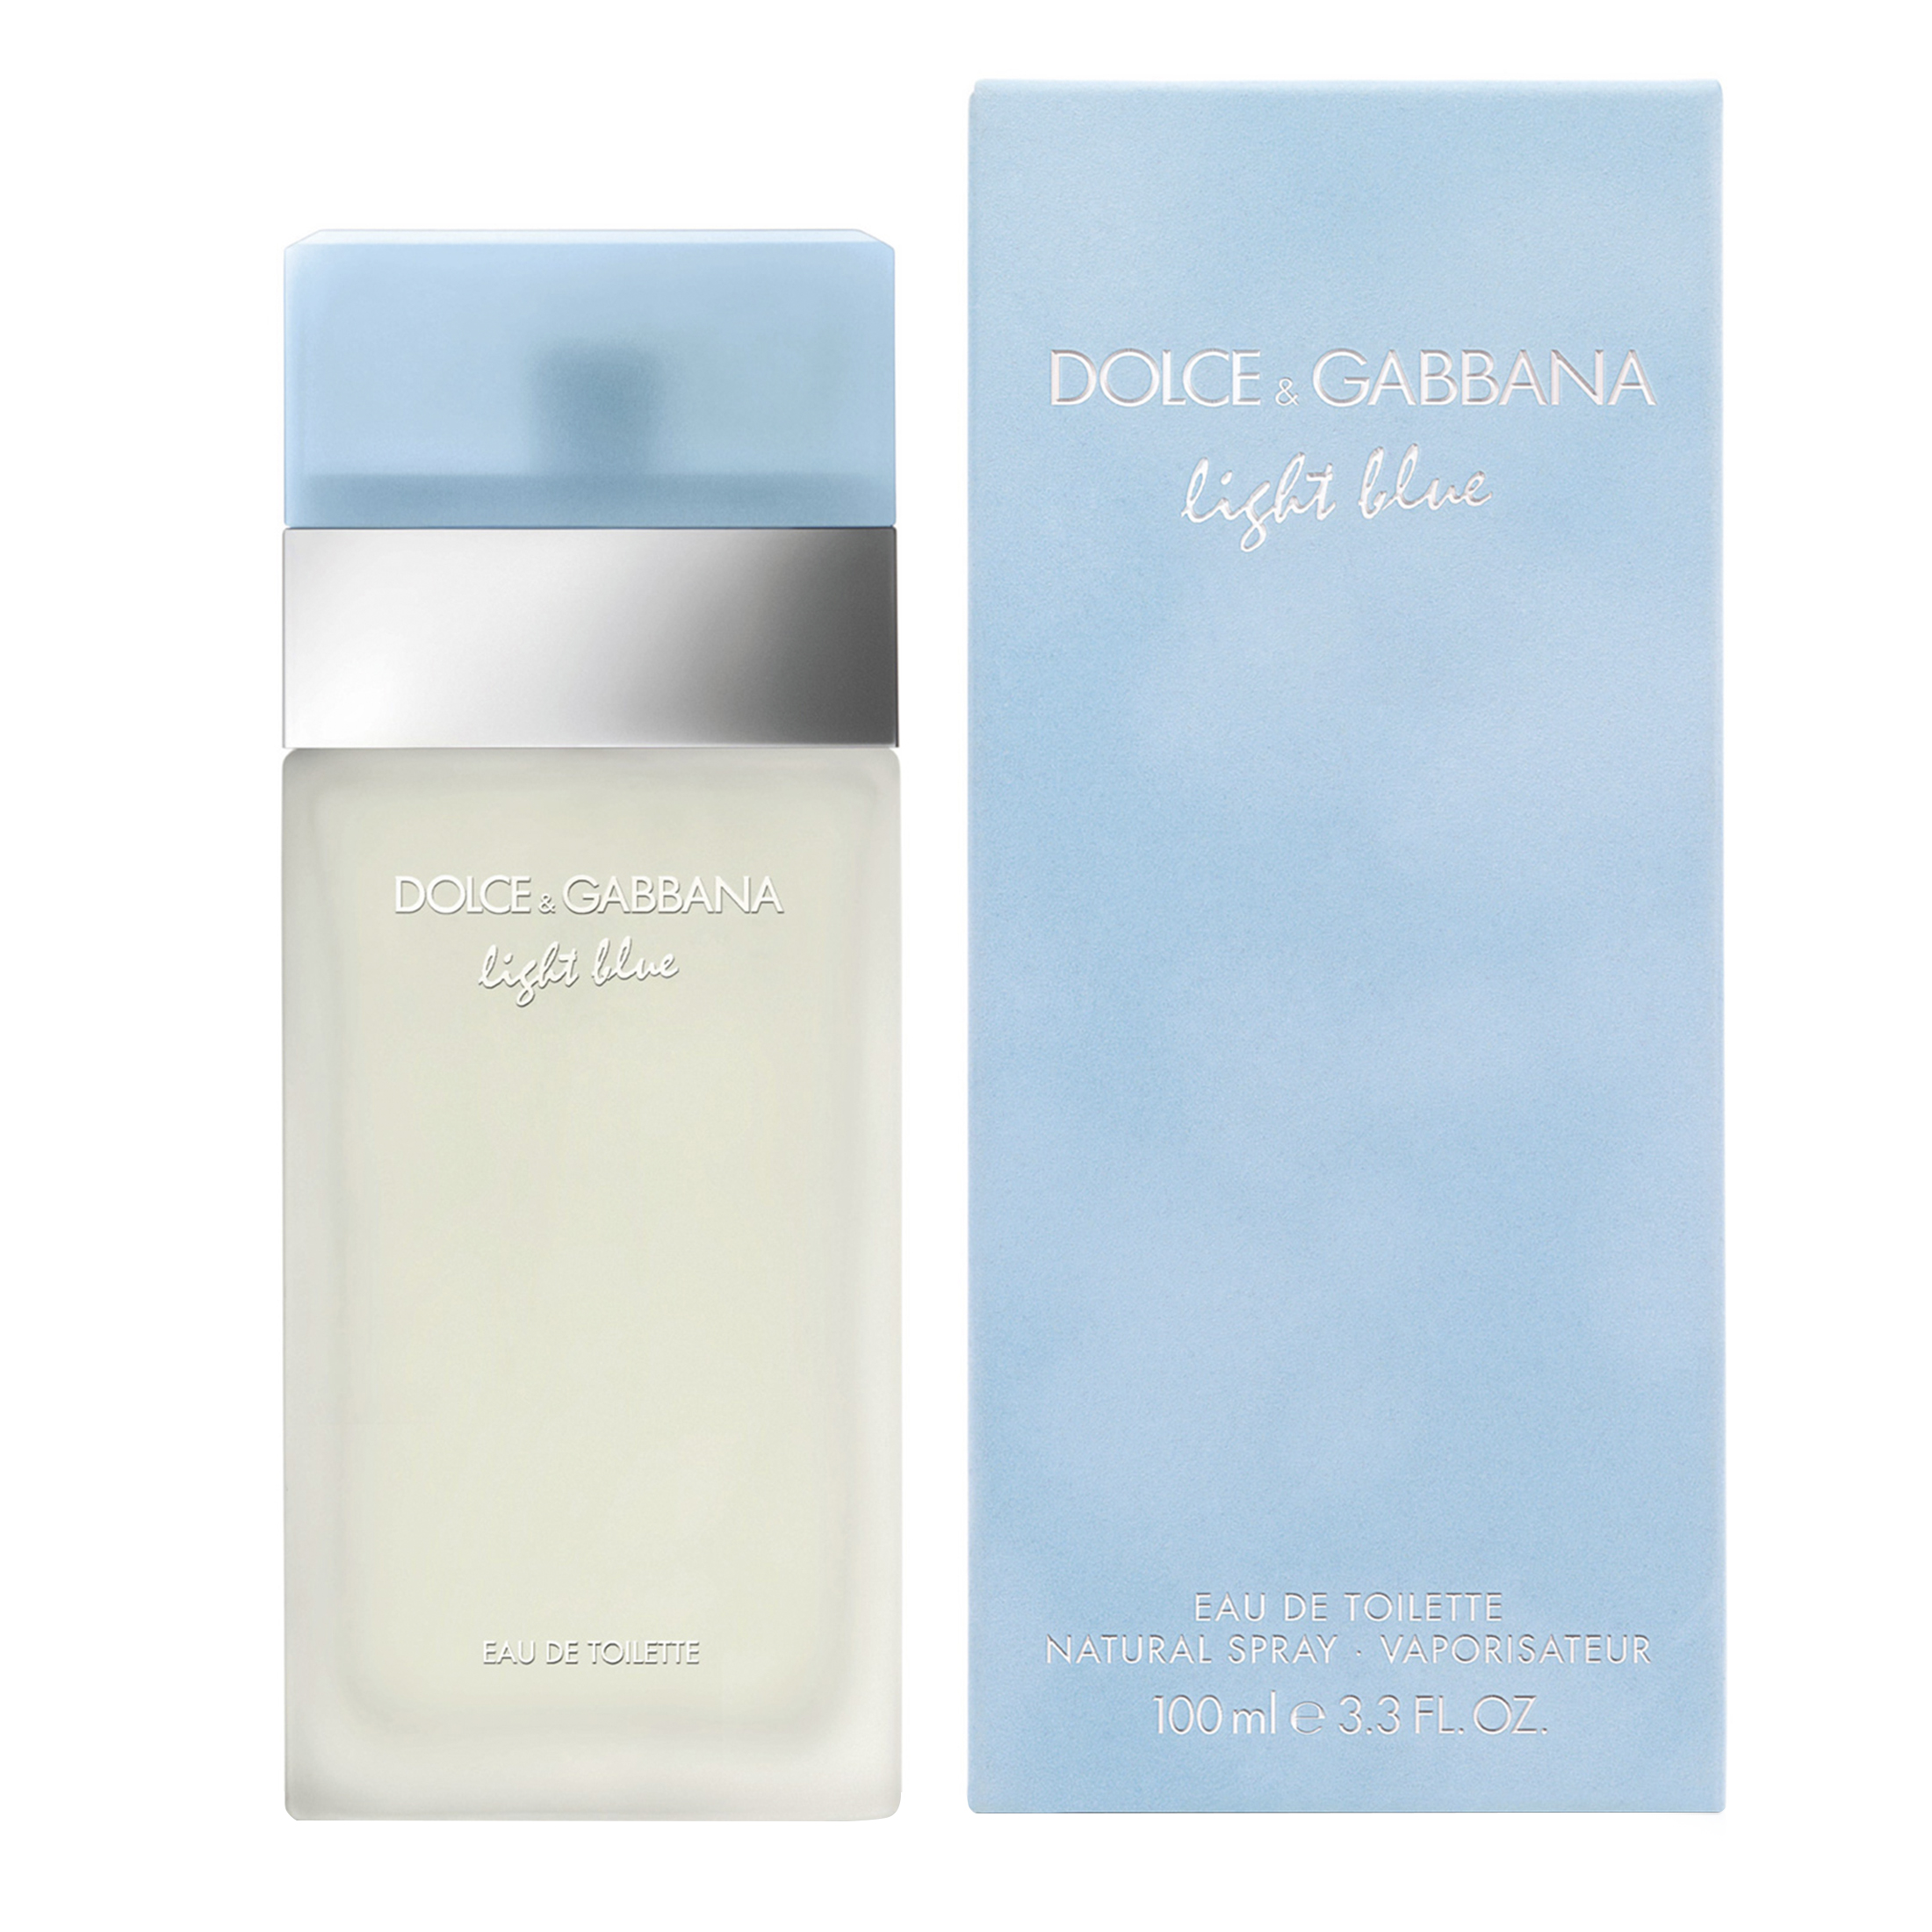 Dolce & Gabbana Light Blue Eau De Toilette, Perfume for Women, 3.3 oz - image 4 of 5